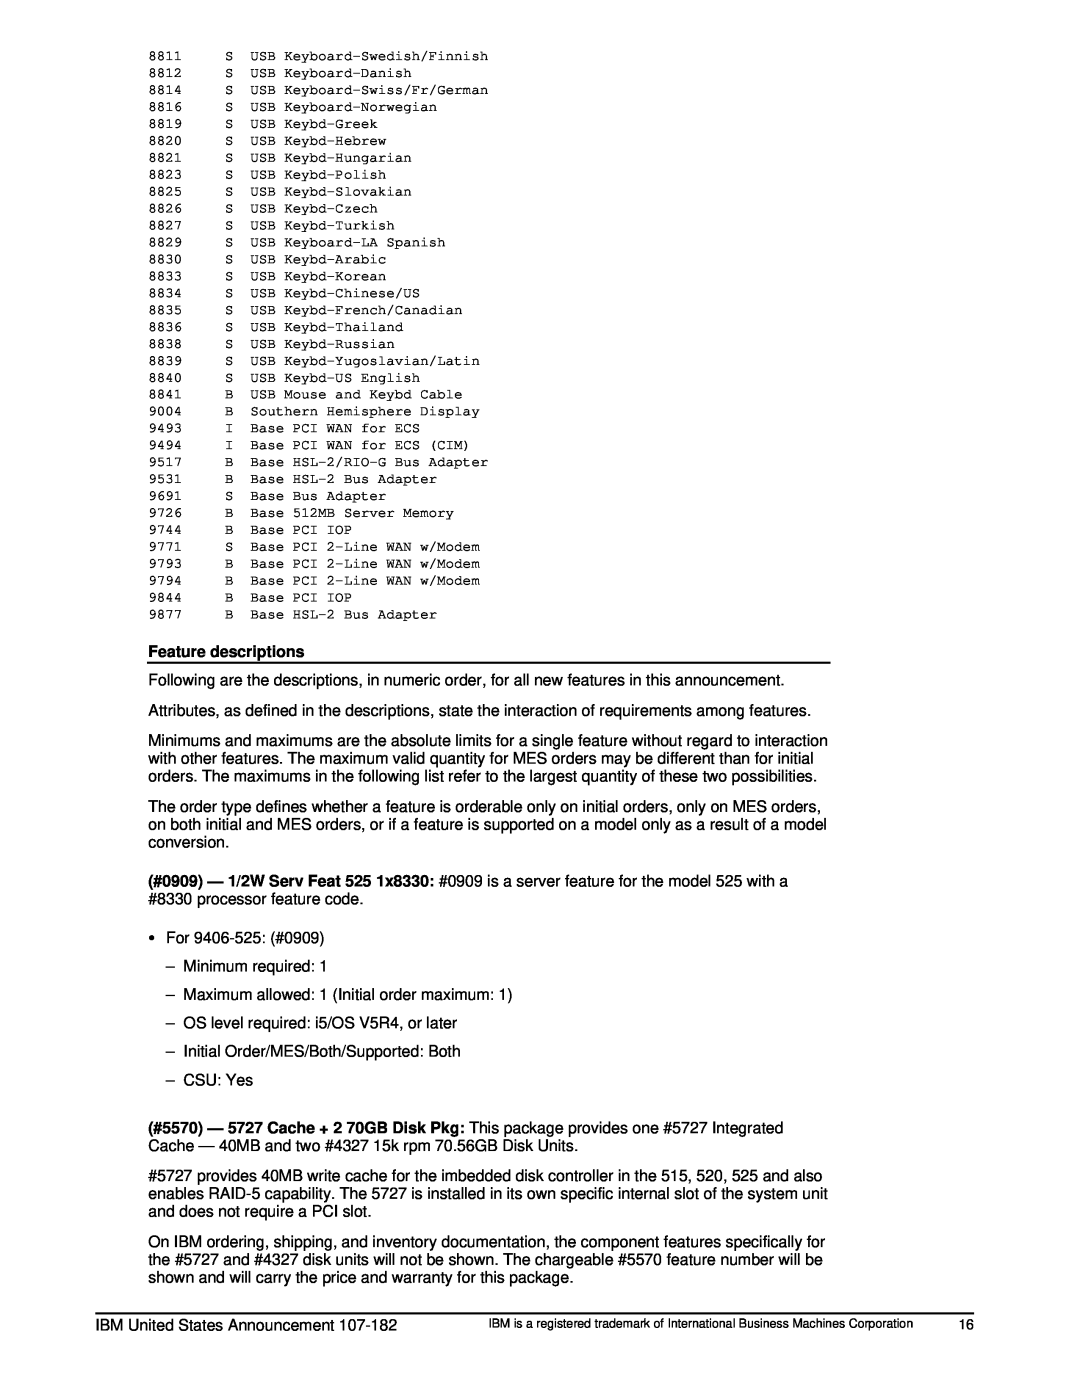 IBM 525 manual Feature descriptions 